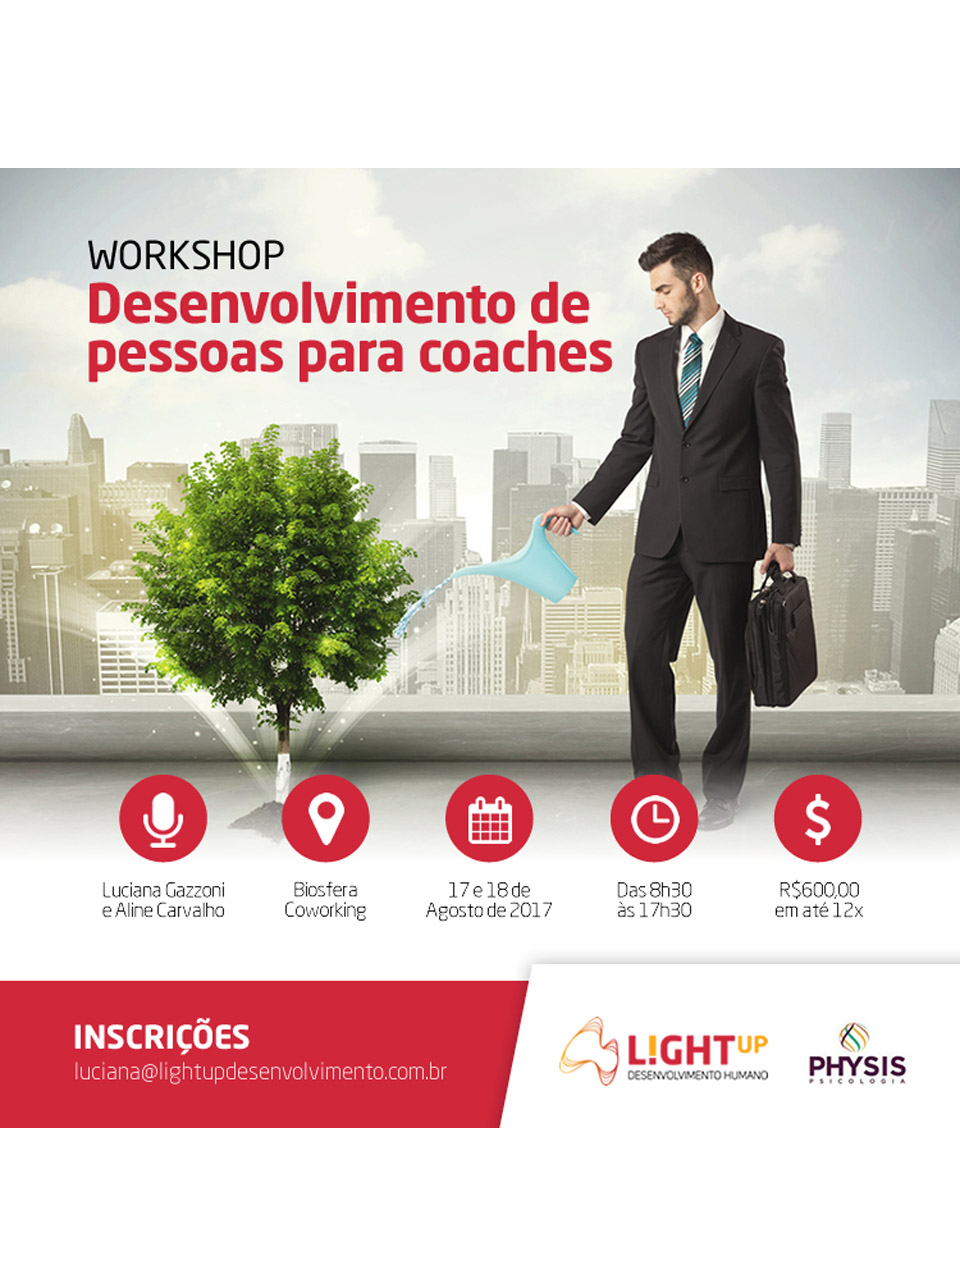 Workshop Biosfera Coworking Curitiba Desenvolvimento de Pessoas para Coaches